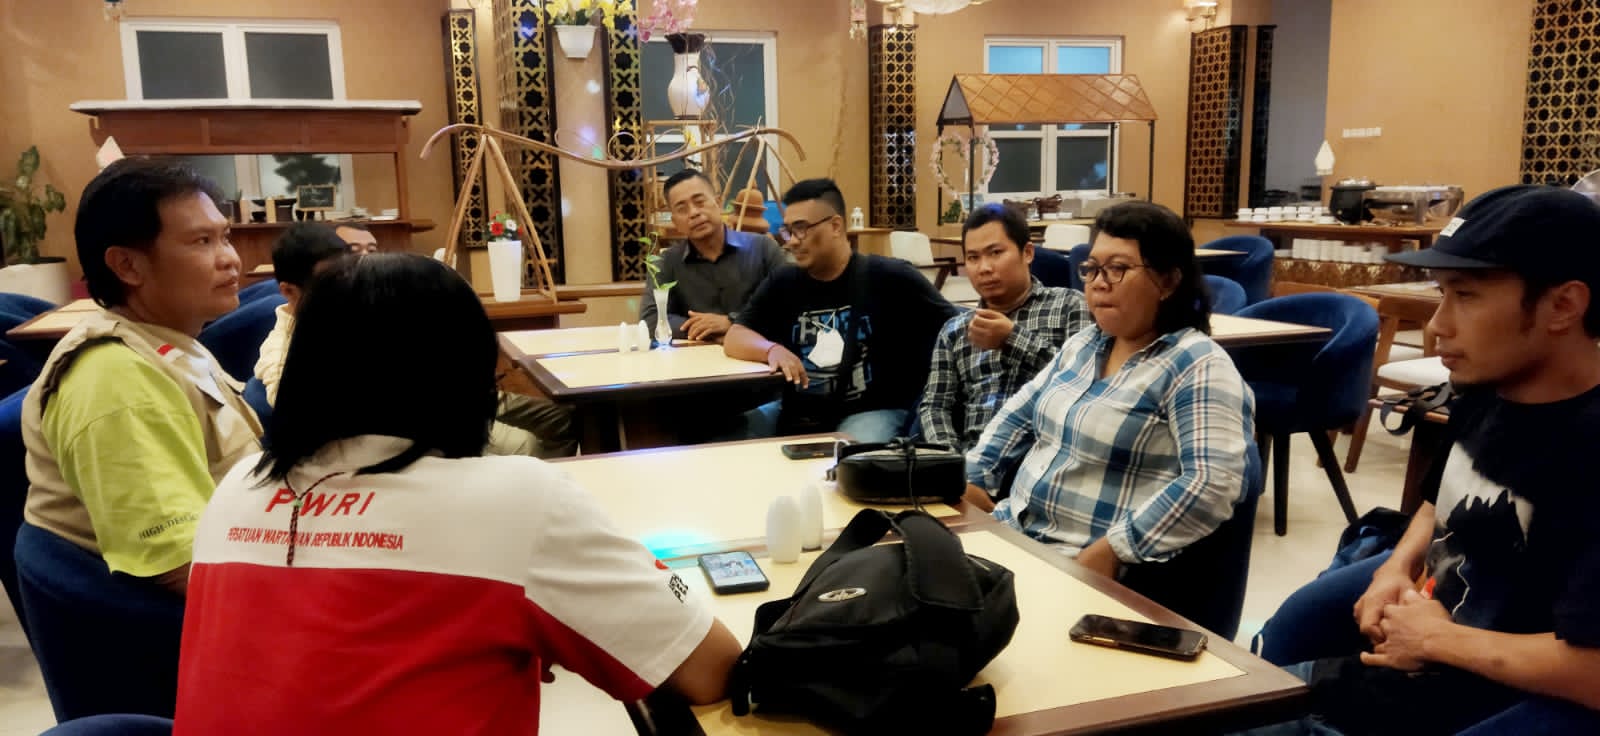 Foto: Rapat Koordinasi Persiapan Pelantikan PWRI D.I Yogyakarta di Royal Darmo Malioboro Hotel/Mas Andre Hariyanto/Suara Utama 